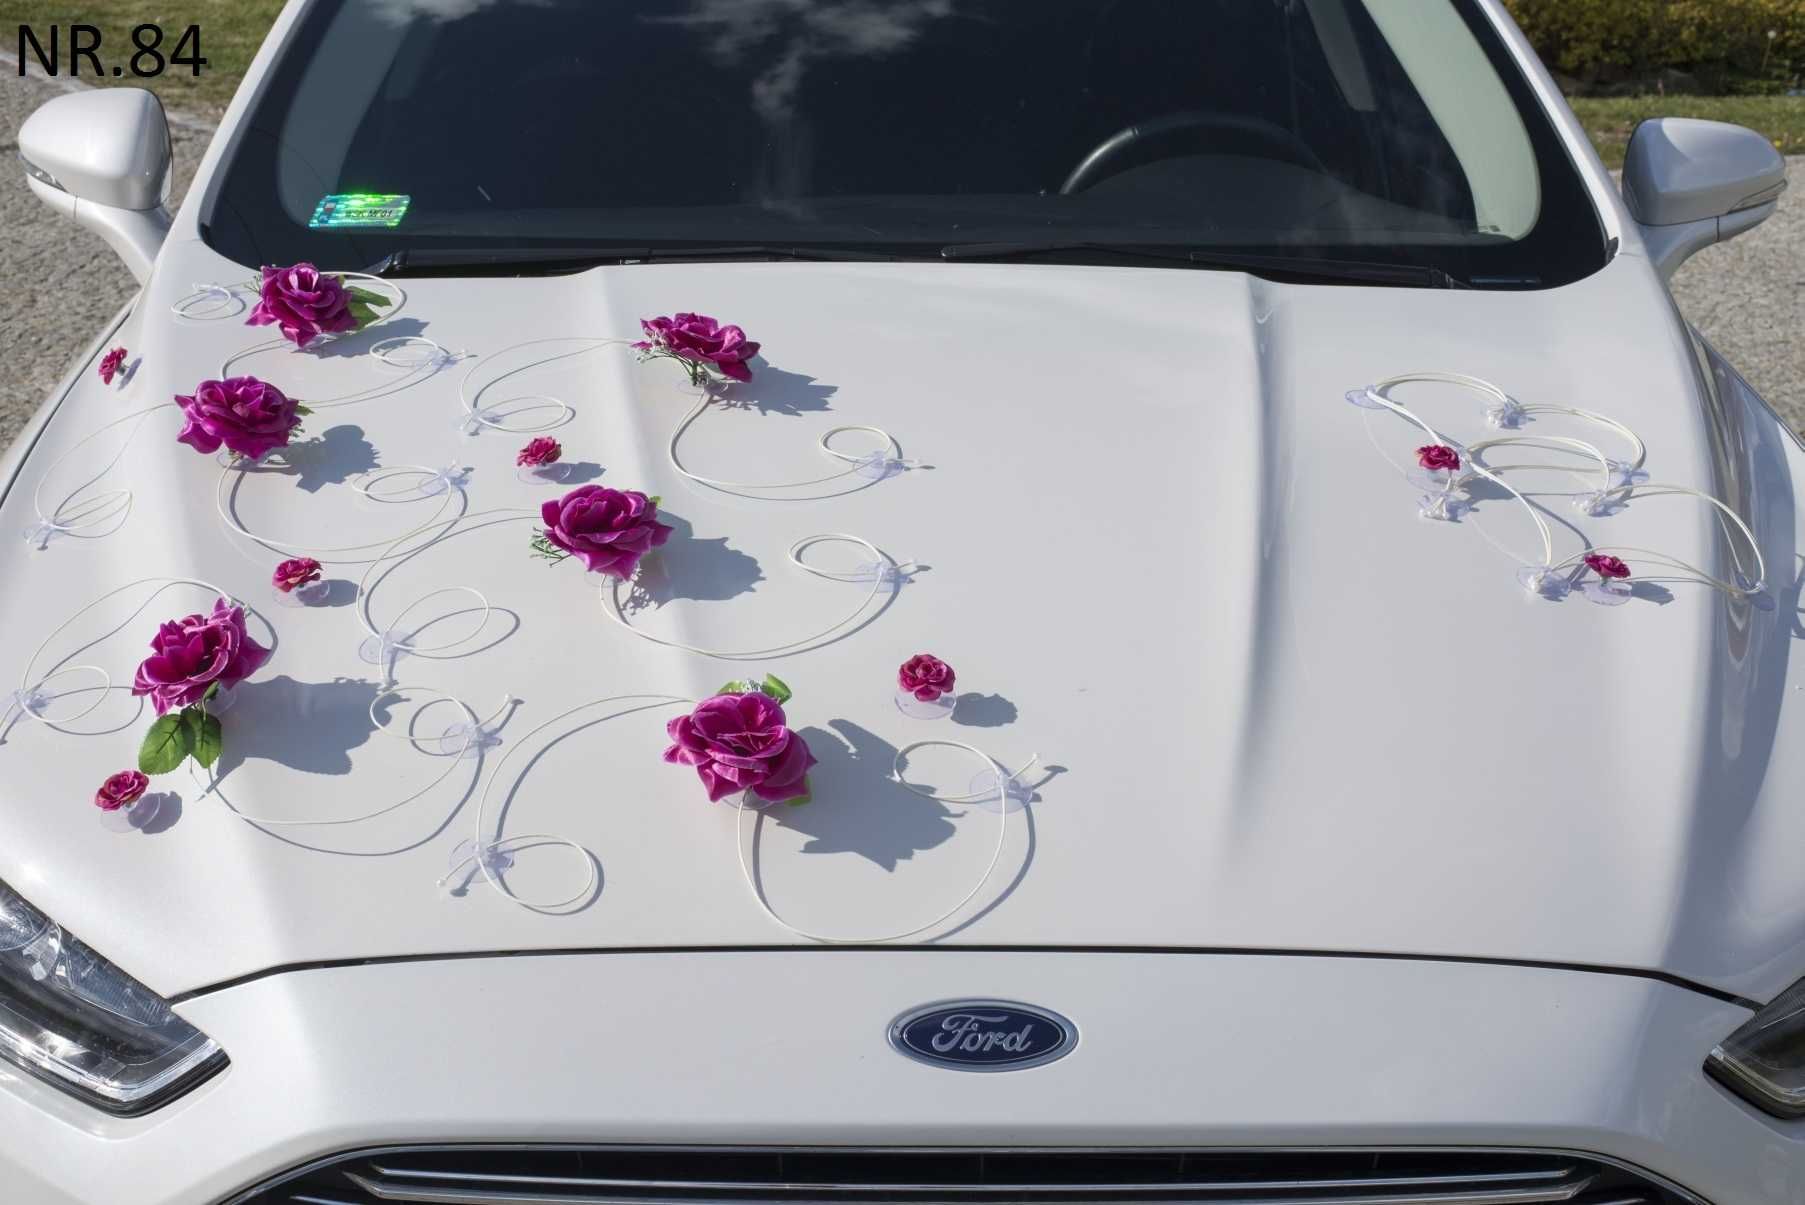 ZESTAW Dekoracja na samochód. Kwiaty-róże ,serca,tablice 084